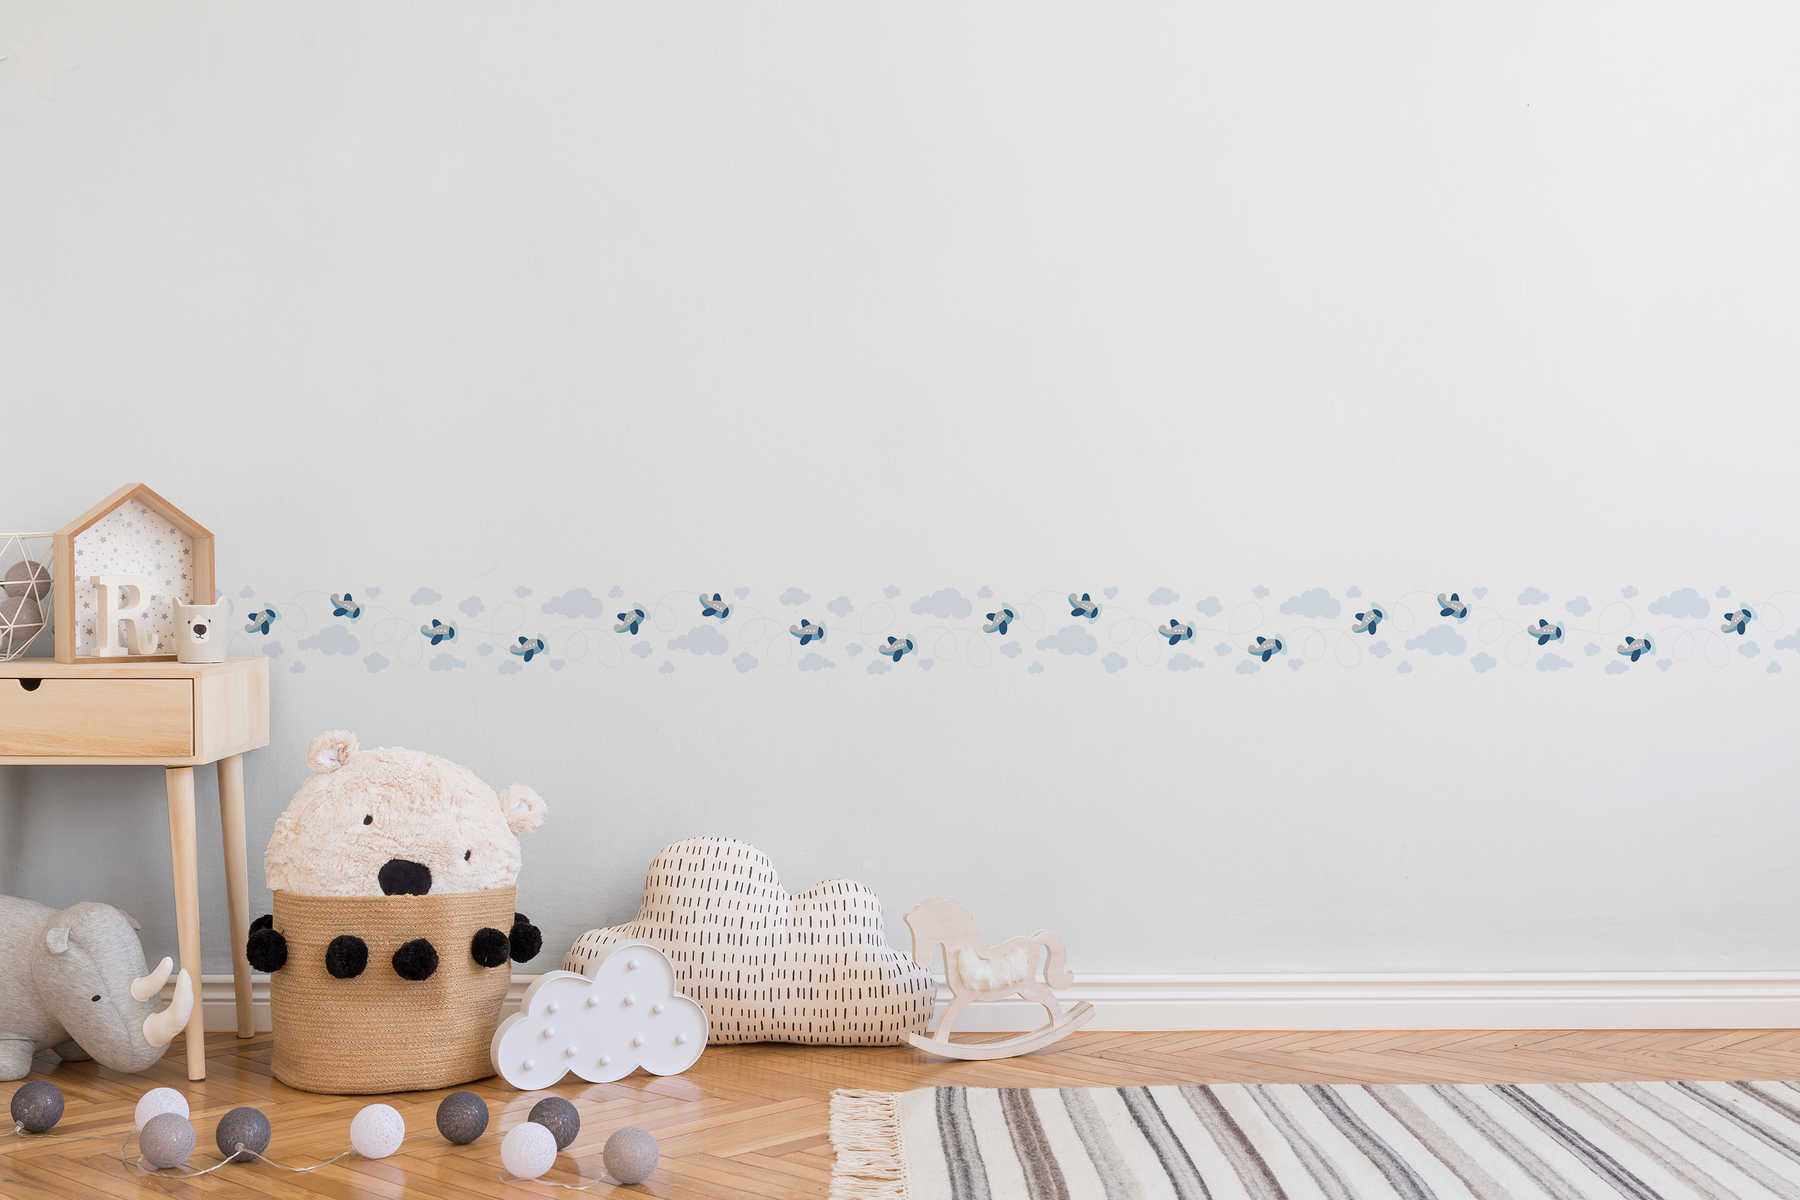             Luftige Aussichten Babyzimmer Bordüre für Jungs – Blau, Grau, Weiß
        